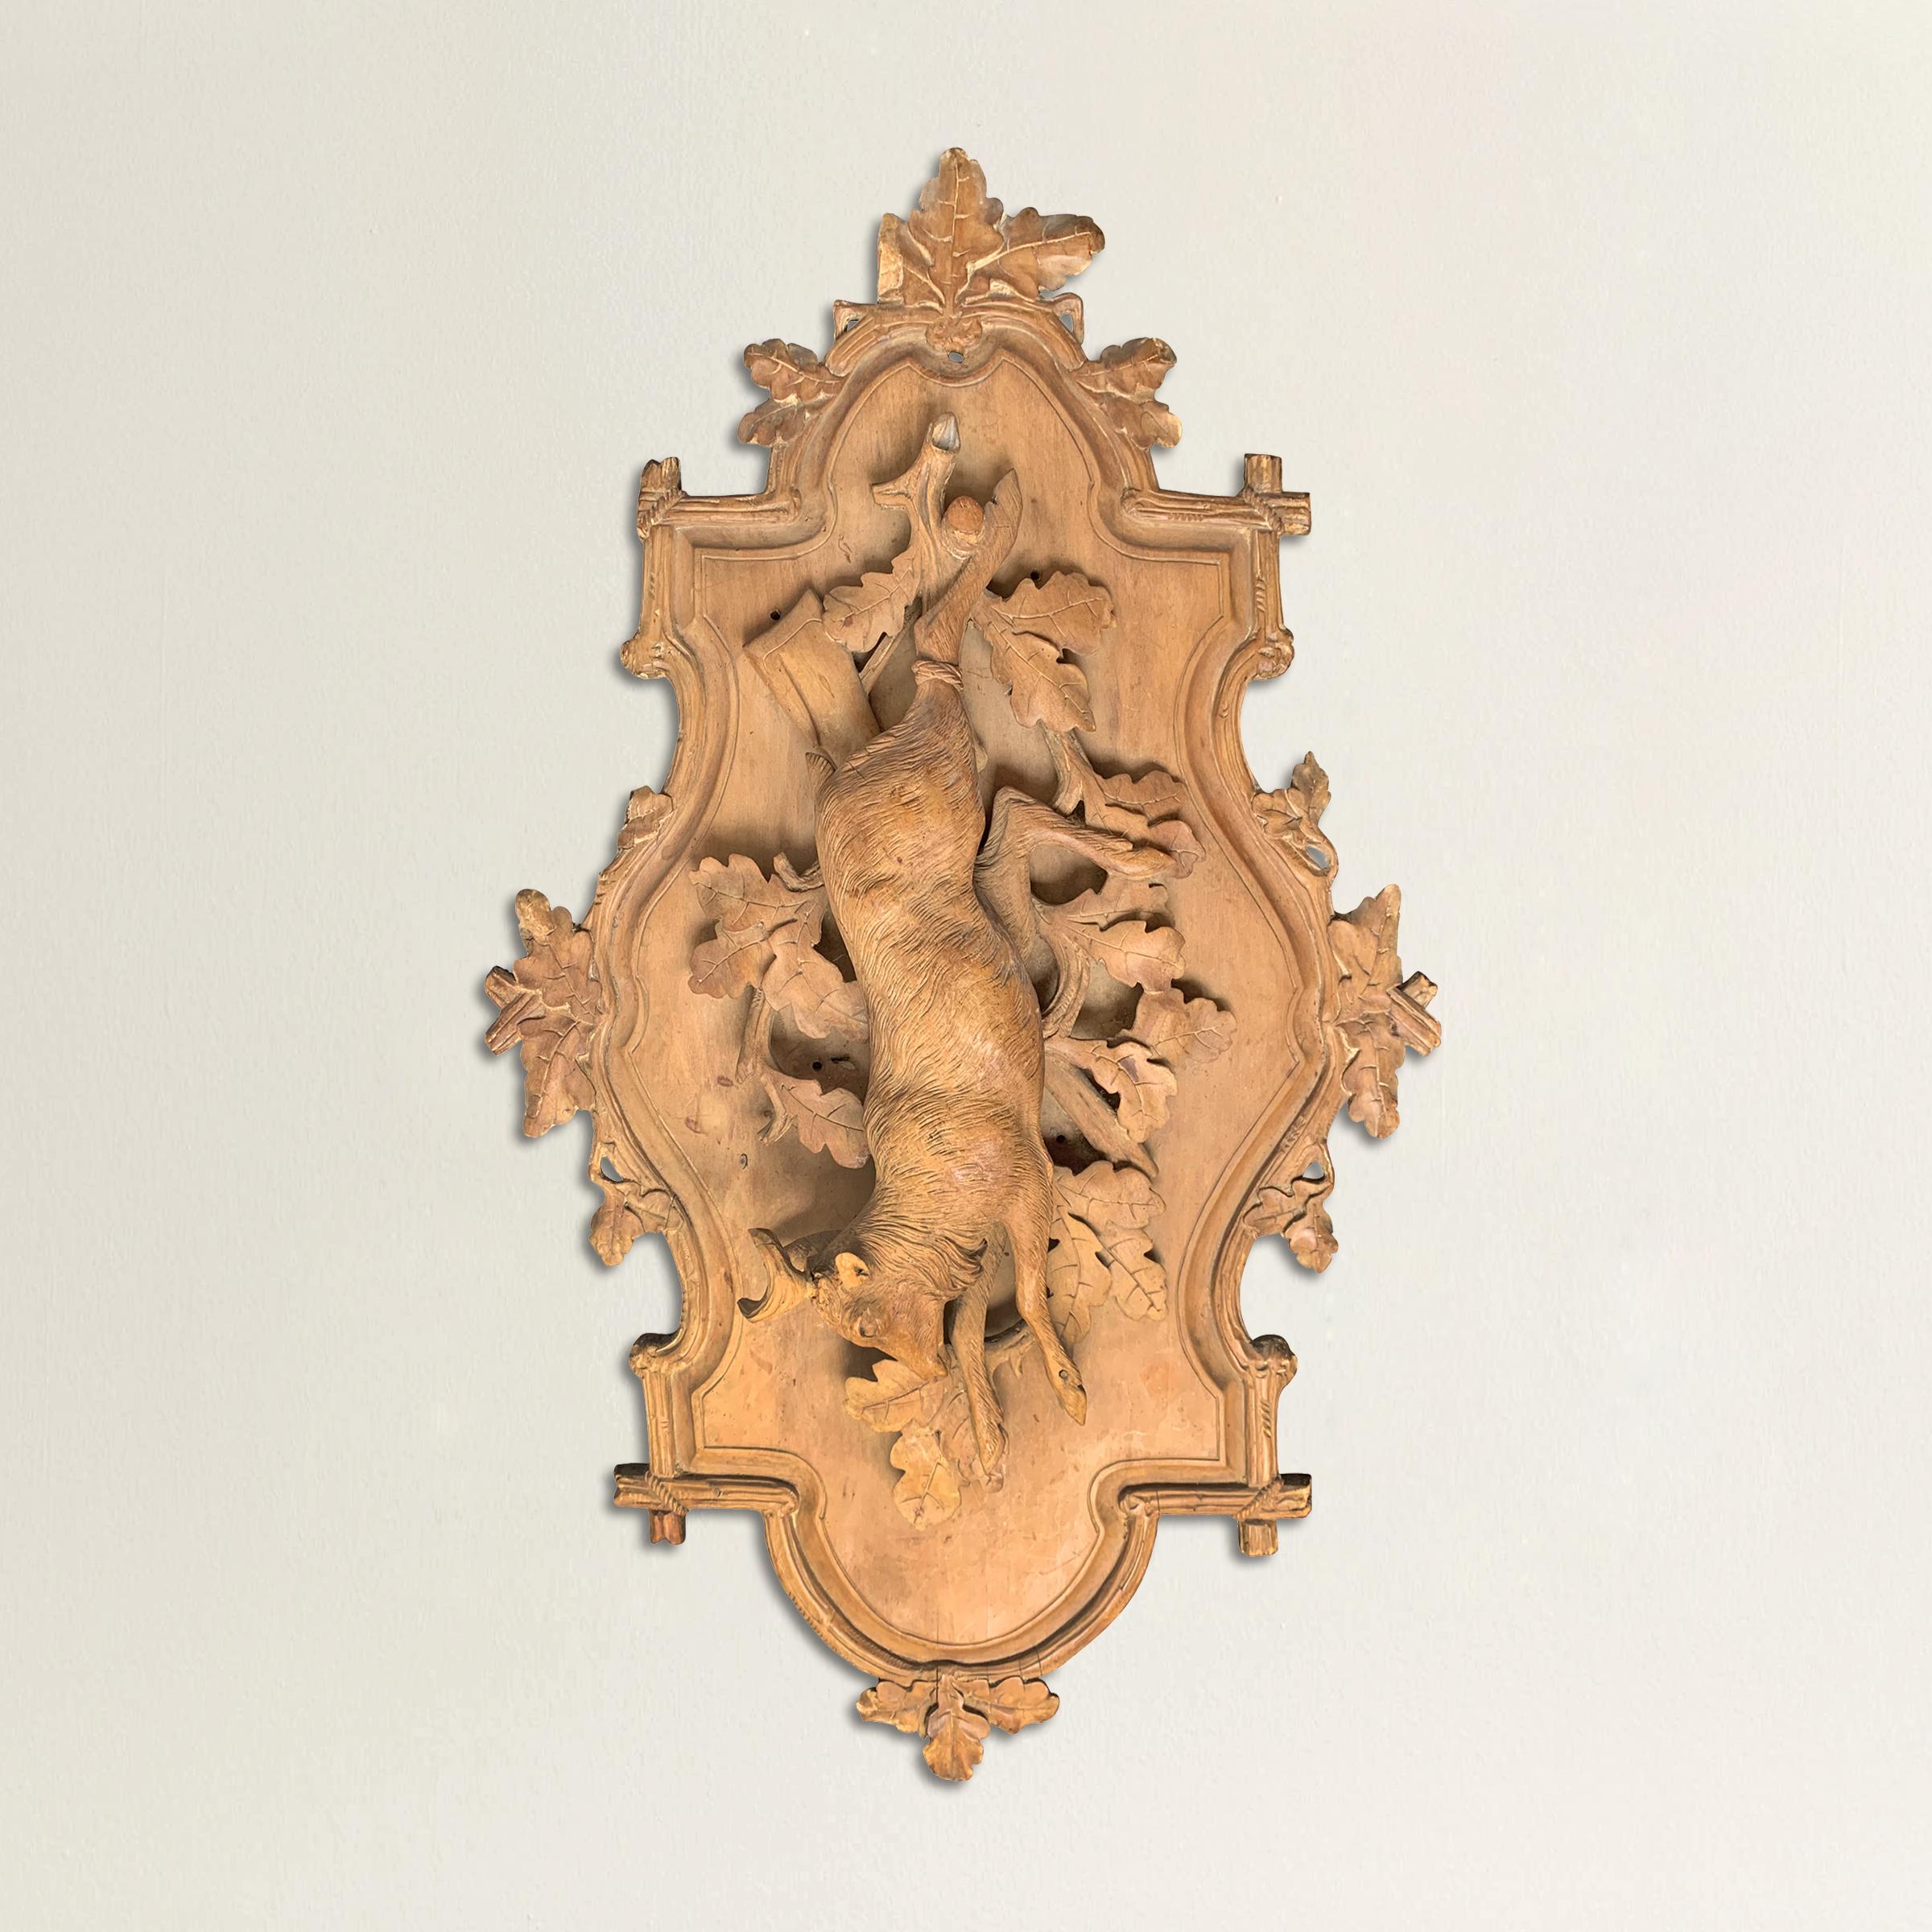 Une fantastique plaque de chasse en bois fruitier bavarois de la fin du 19ème siècle, sculptée à la main, représentant un chevreuil suspendu à une cheville en bois au-dessus d'une branche de chêne avec des feuilles et montée sur une planche avec un